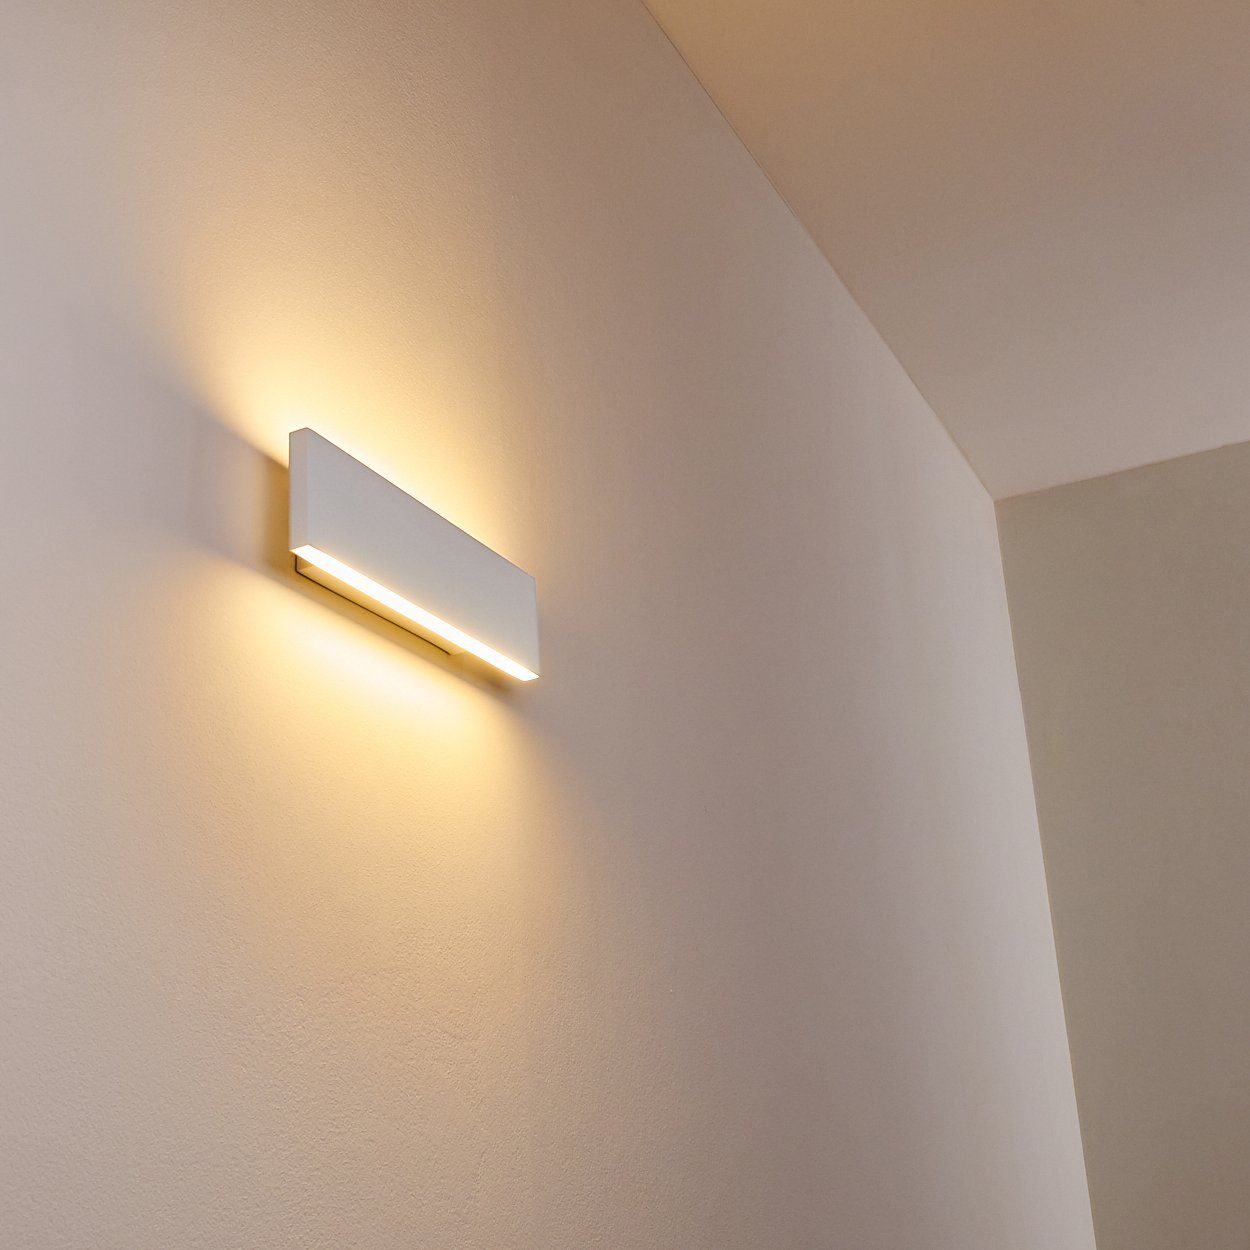 hofstein Wandleuchte dimmbare LED Up Down Leuchte Flur Zimmer Wand Wohn Schlaf Beleuchtung